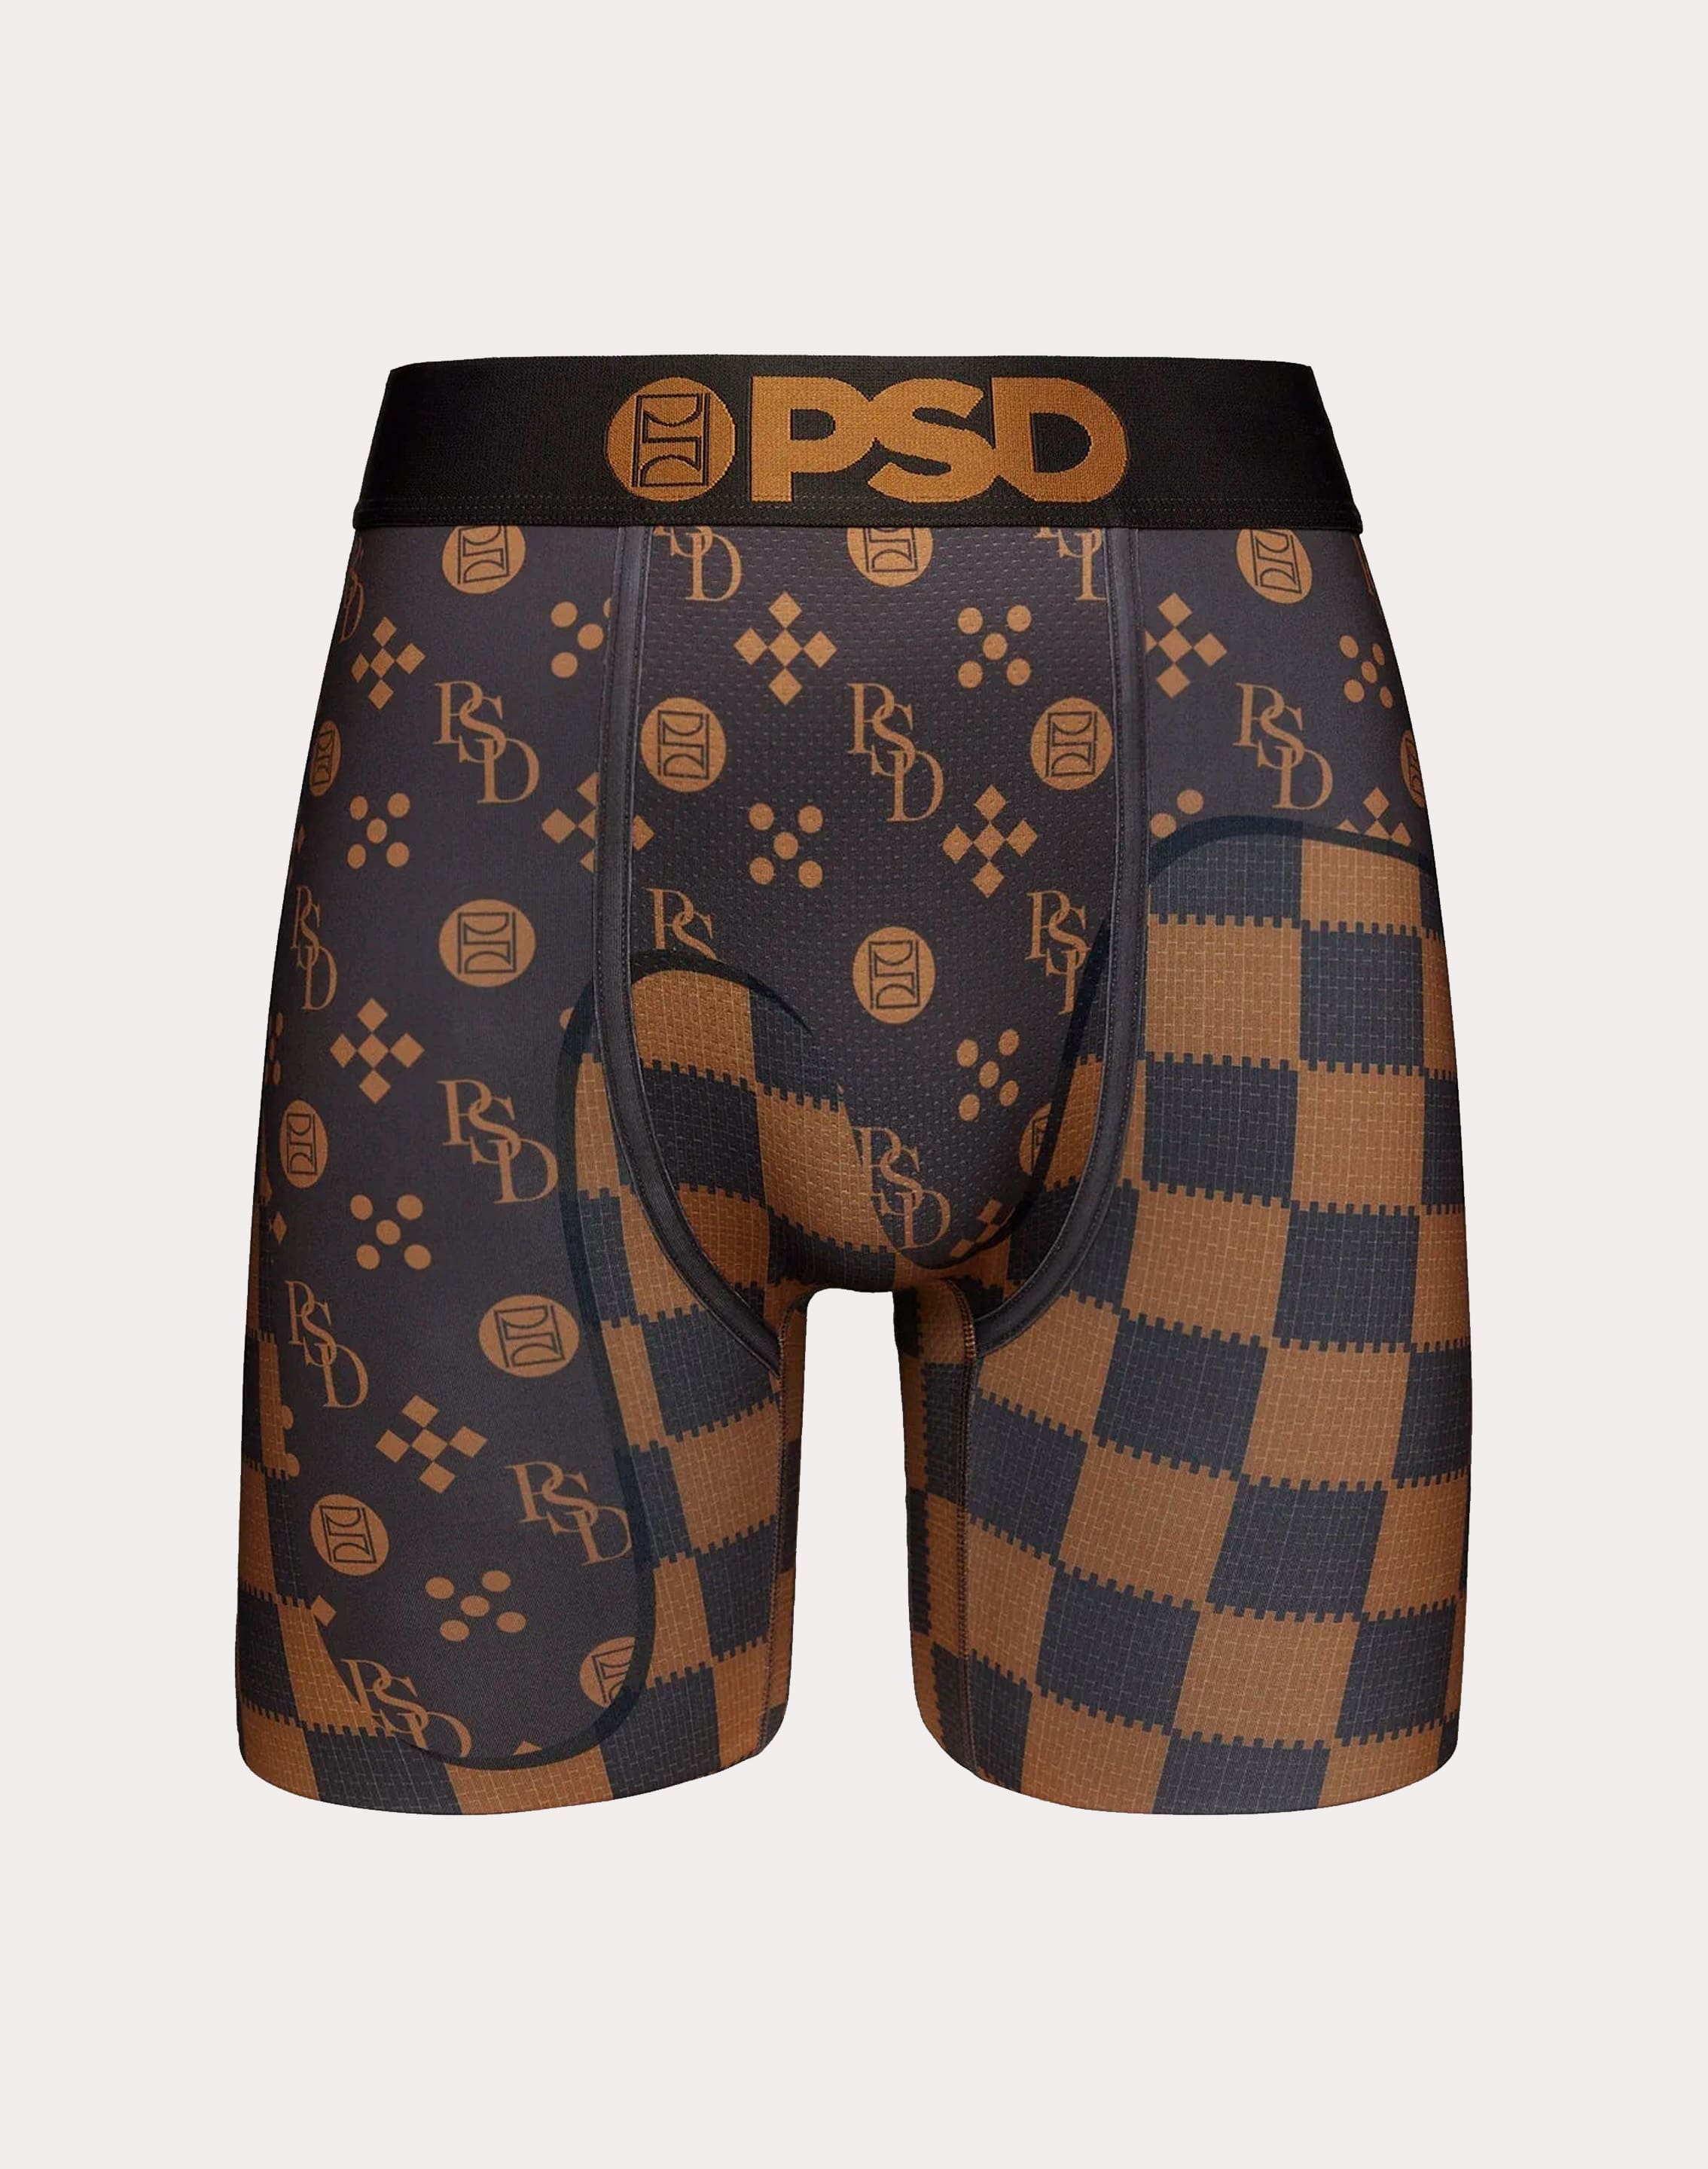 Love Drip Boxer Brief MULTLD XL by PSD Underwear